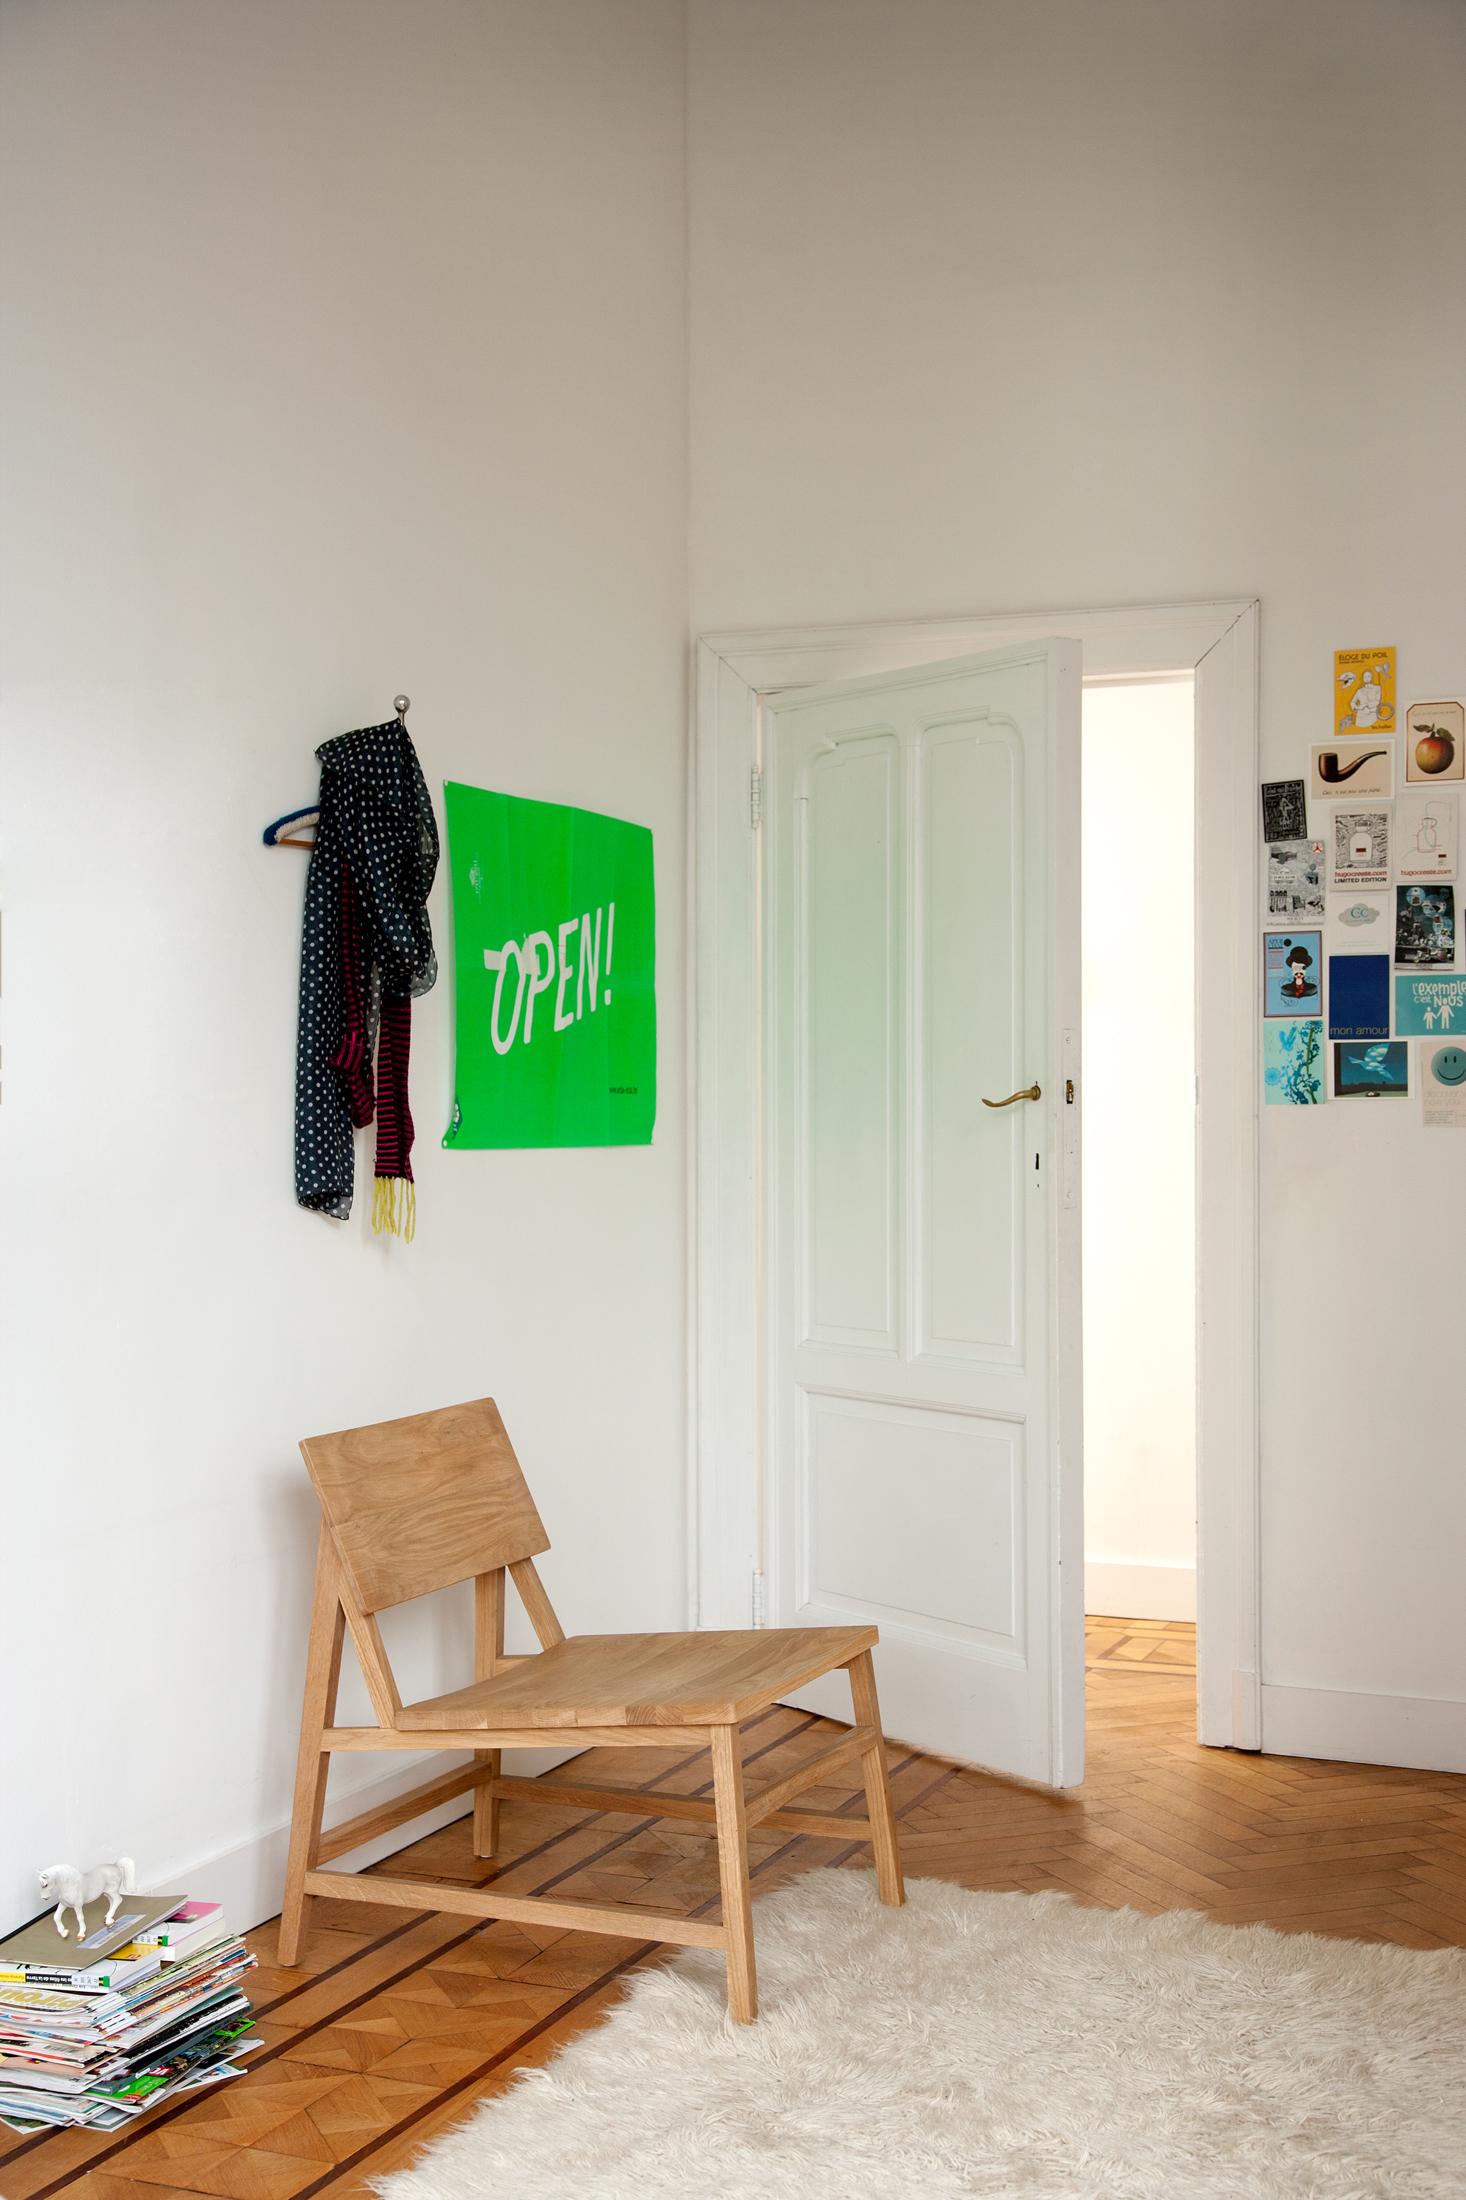 Breiter Loungestuhl aus Holz #stuhl #teppich #poster #holzstuhl #garderobenhaken #stummerdiener ©Ethnicraft